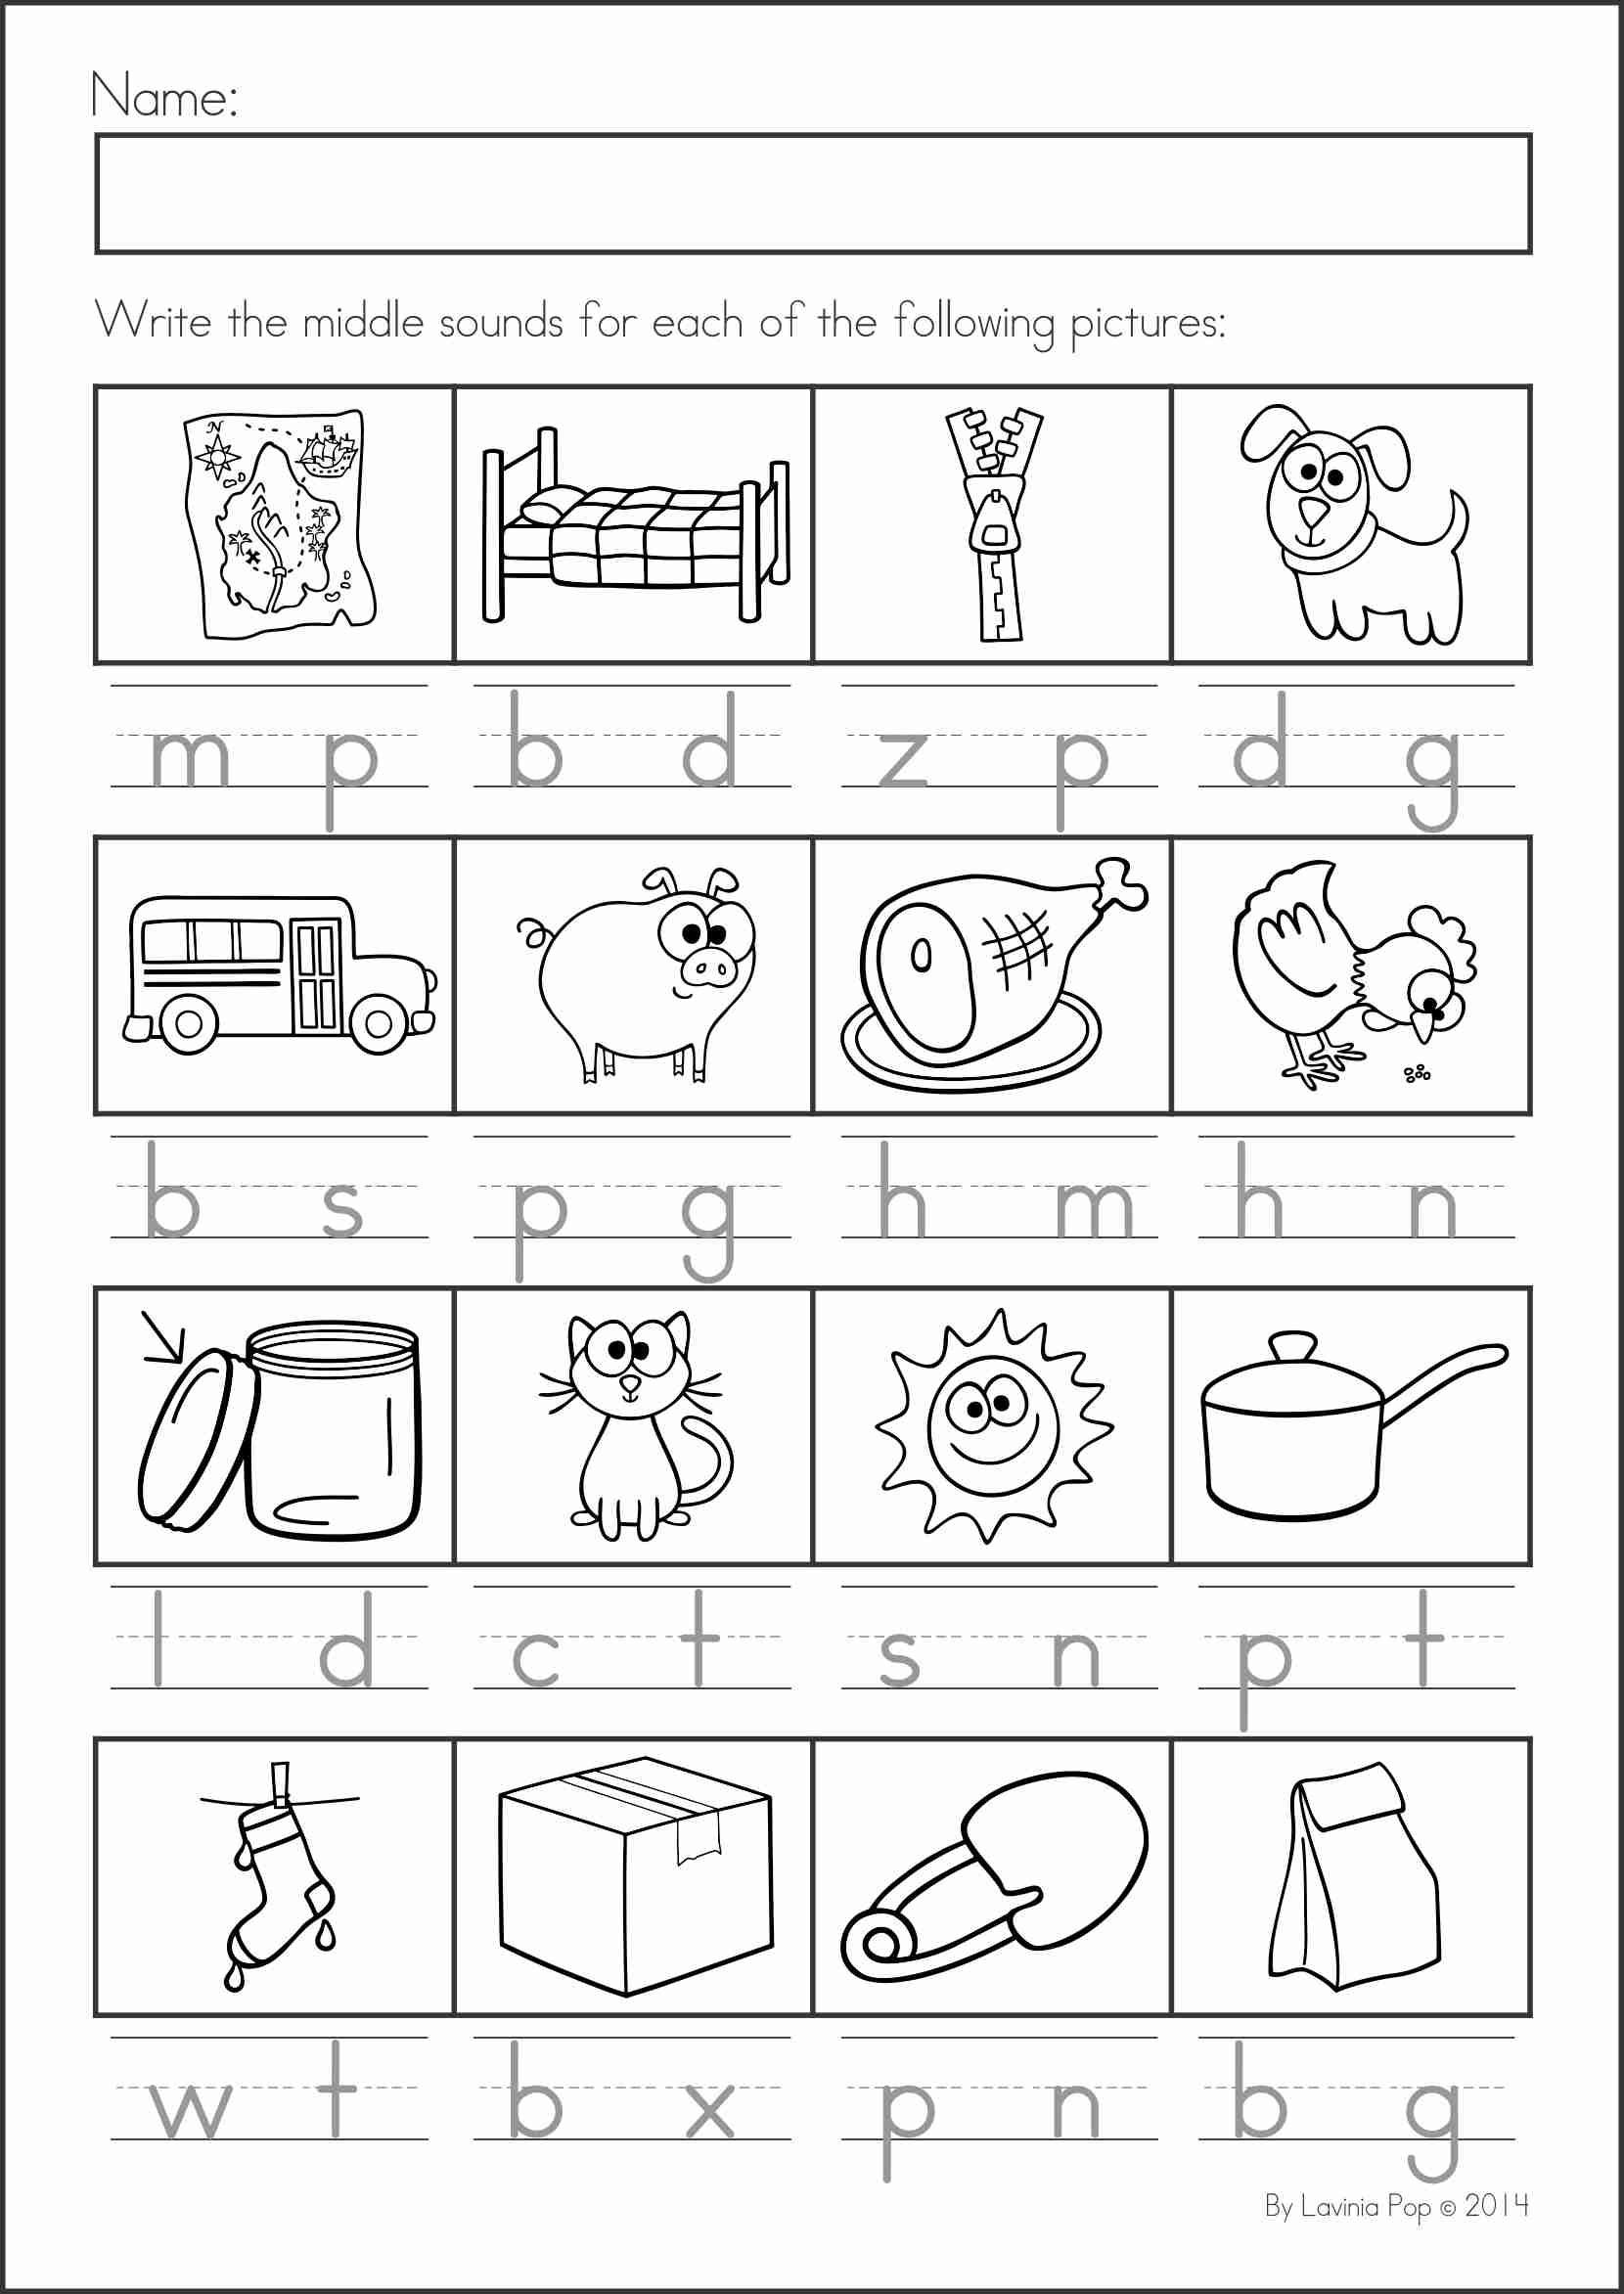 Middle sounds Worksheets for Kindergarten Summer Review Kindergarten Math &amp; Literacy Worksheets